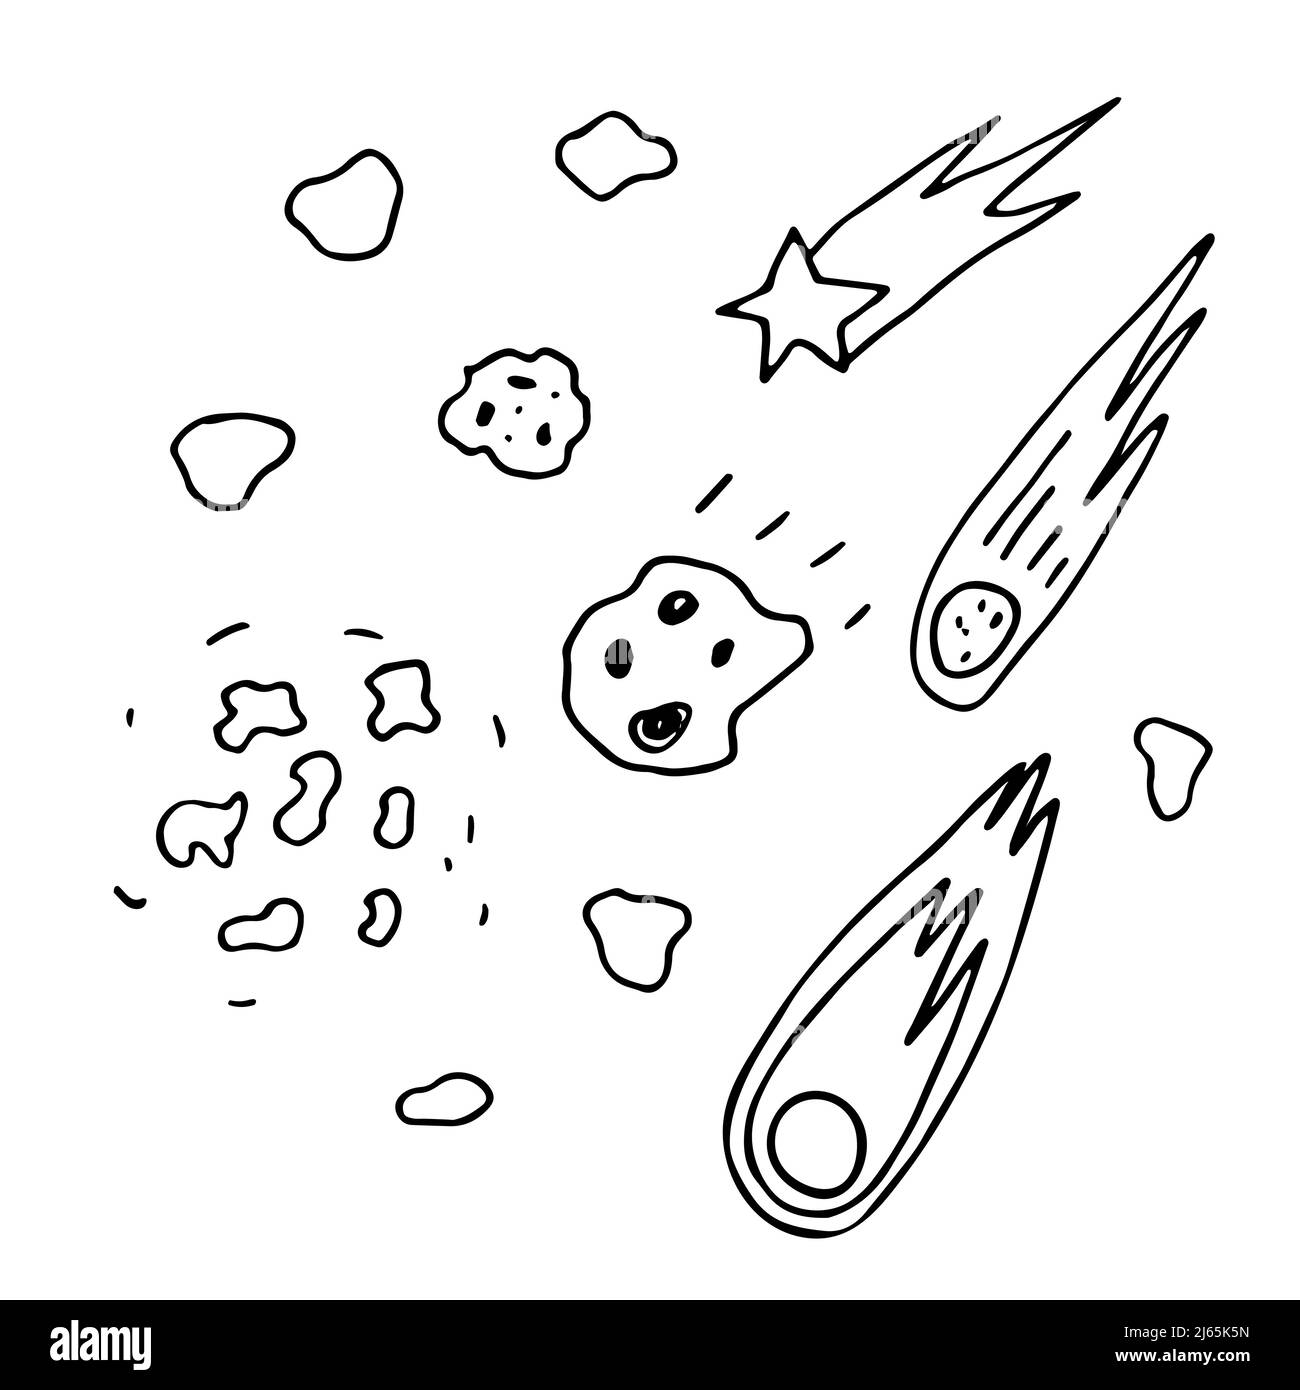 Ilustración meteorito Imágenes de stock en blanco y negro - Página 2 - Alamy